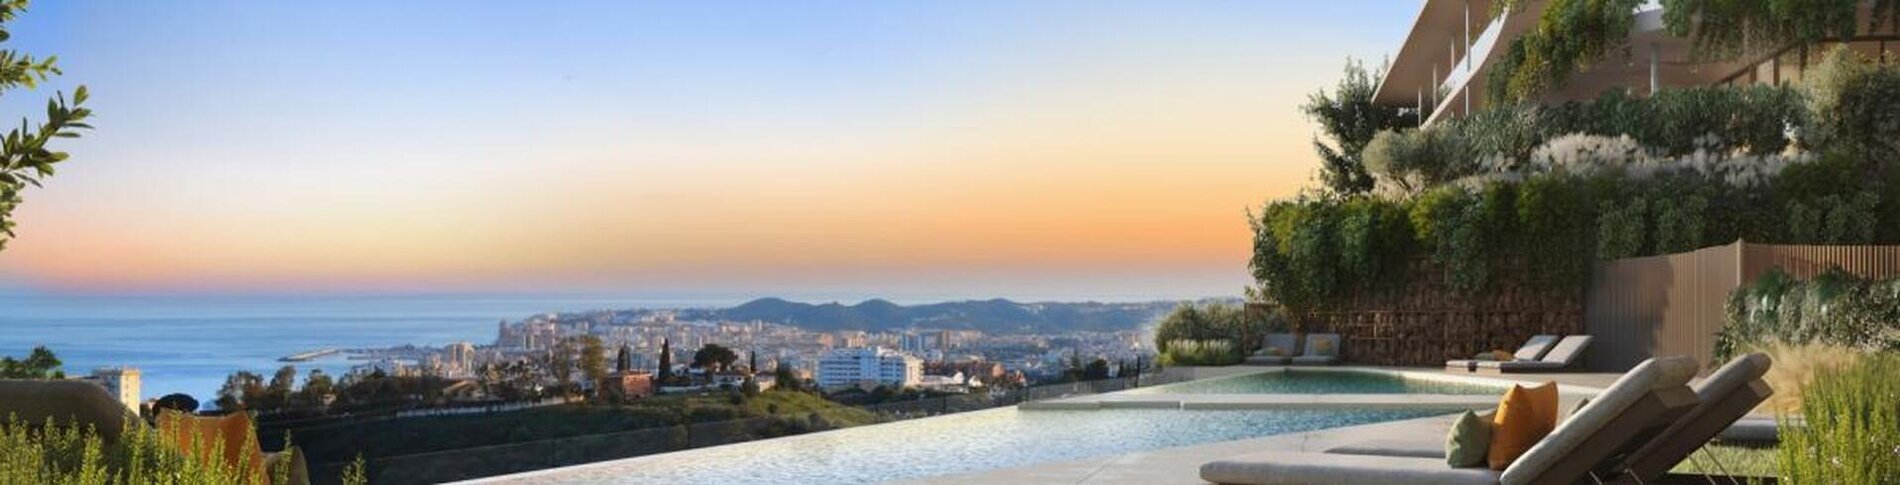 Acheter votre maison de rêve en Espagne